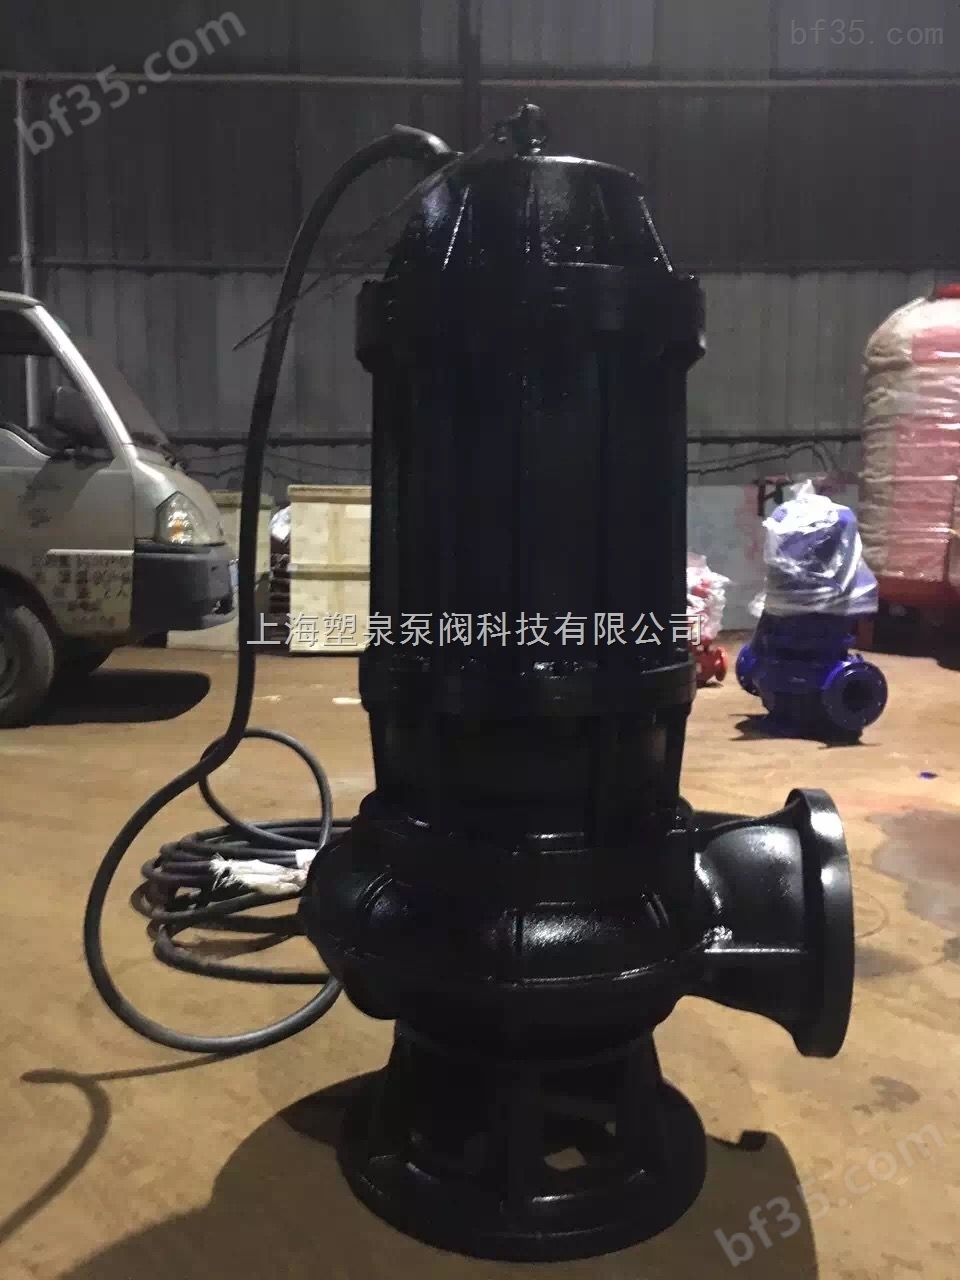 供应QW300-1100-10-55耐高温排污泵,小型浅灰排污泵,排污泵型号